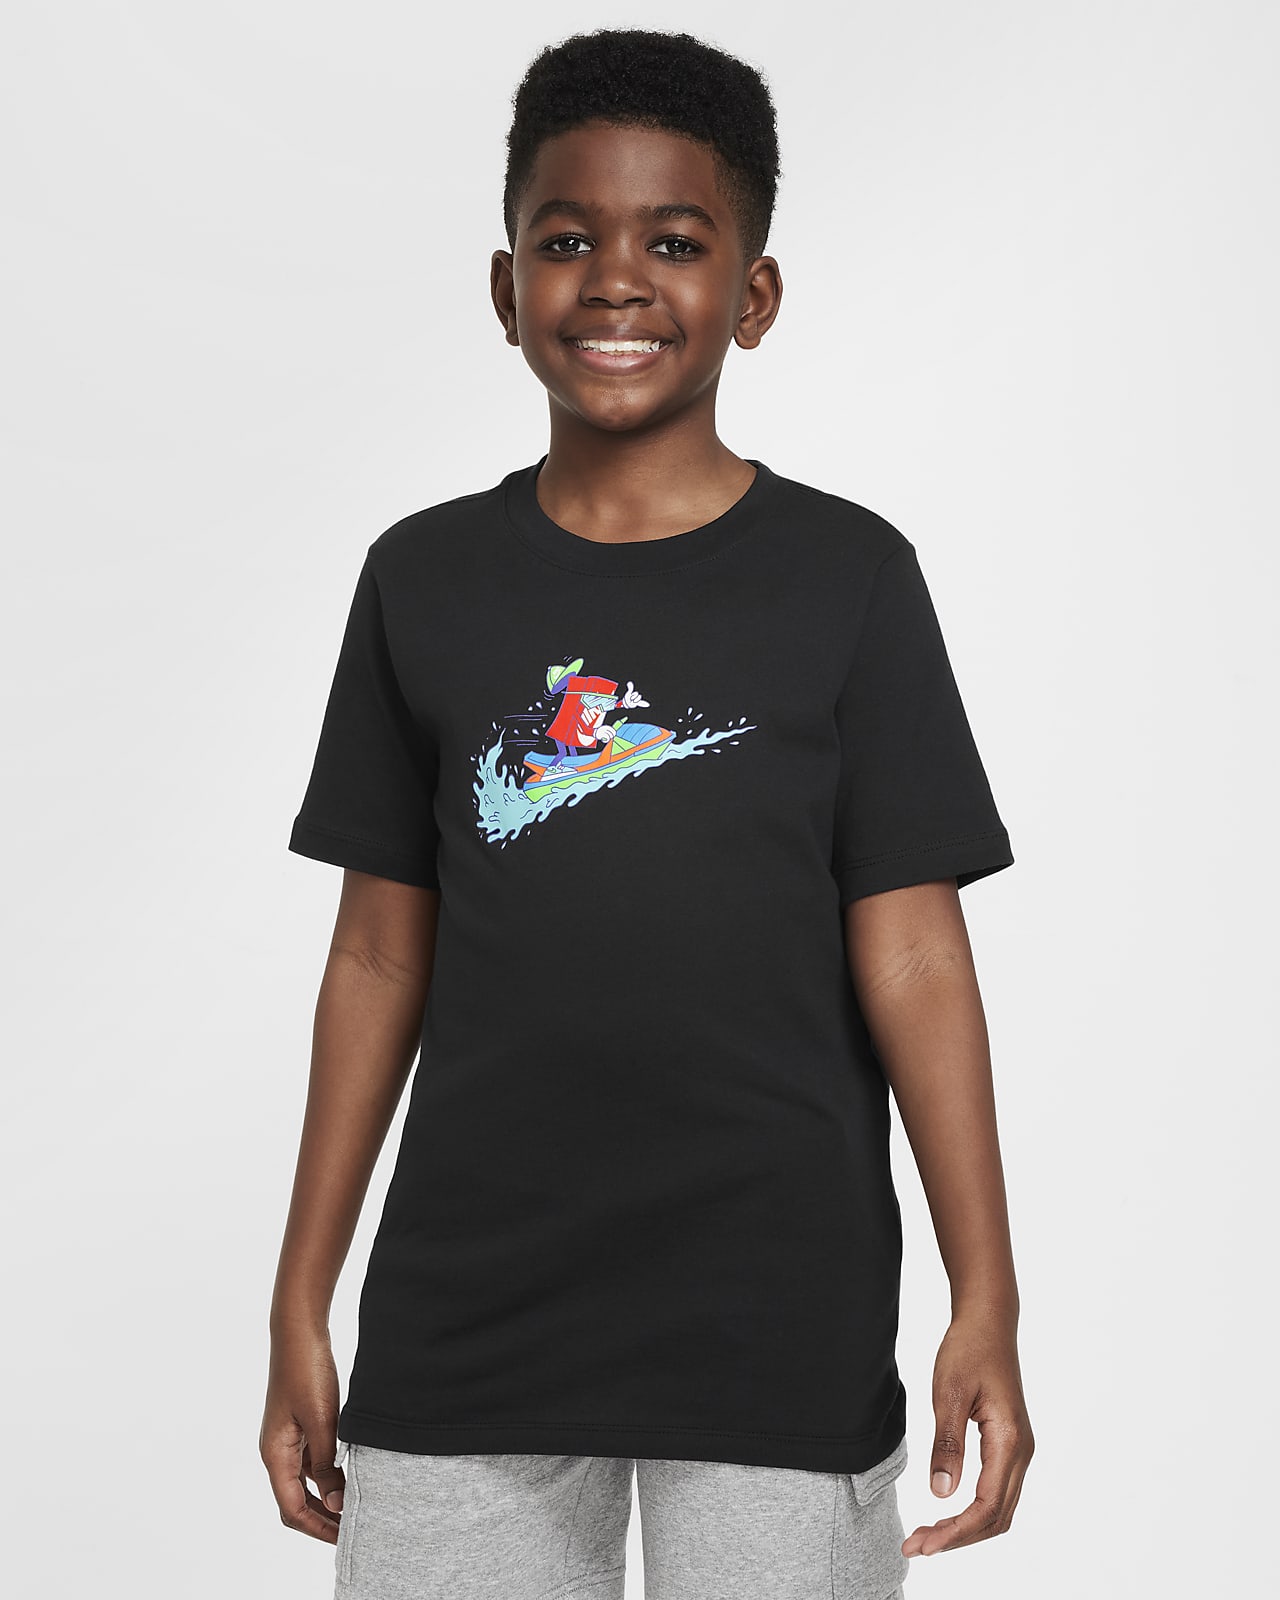 T-Shirt Nike Sportswear για μεγάλα παιδιά